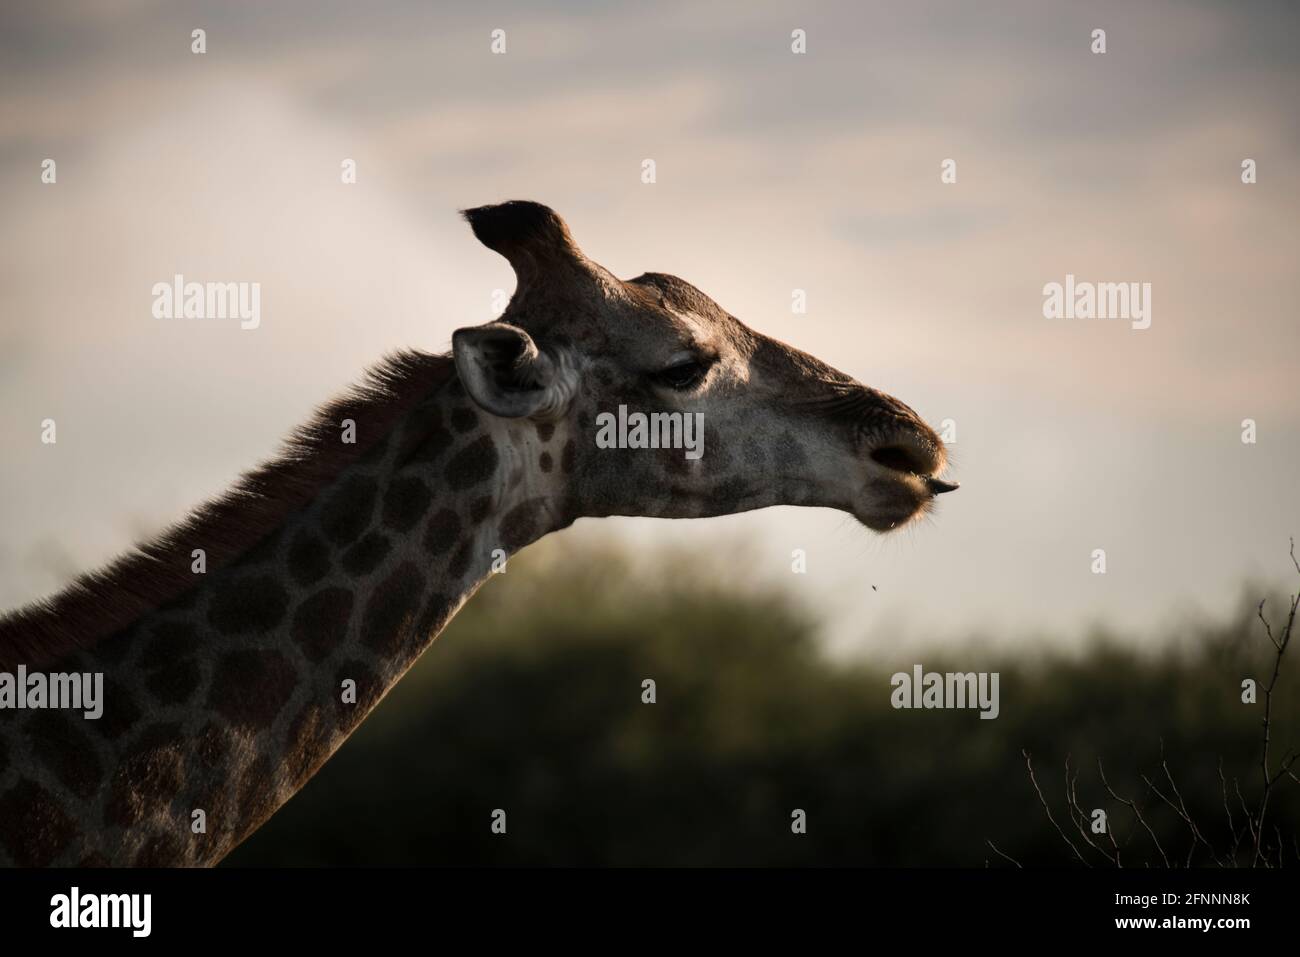 Profil de la tête et du cou de la girafe femelle (Giraffe camelopardalis) avec la langue qui dépasse dans la lumière de la fin de l'après-midi. Dinnokeng Big 5 Game Reserve. Banque D'Images